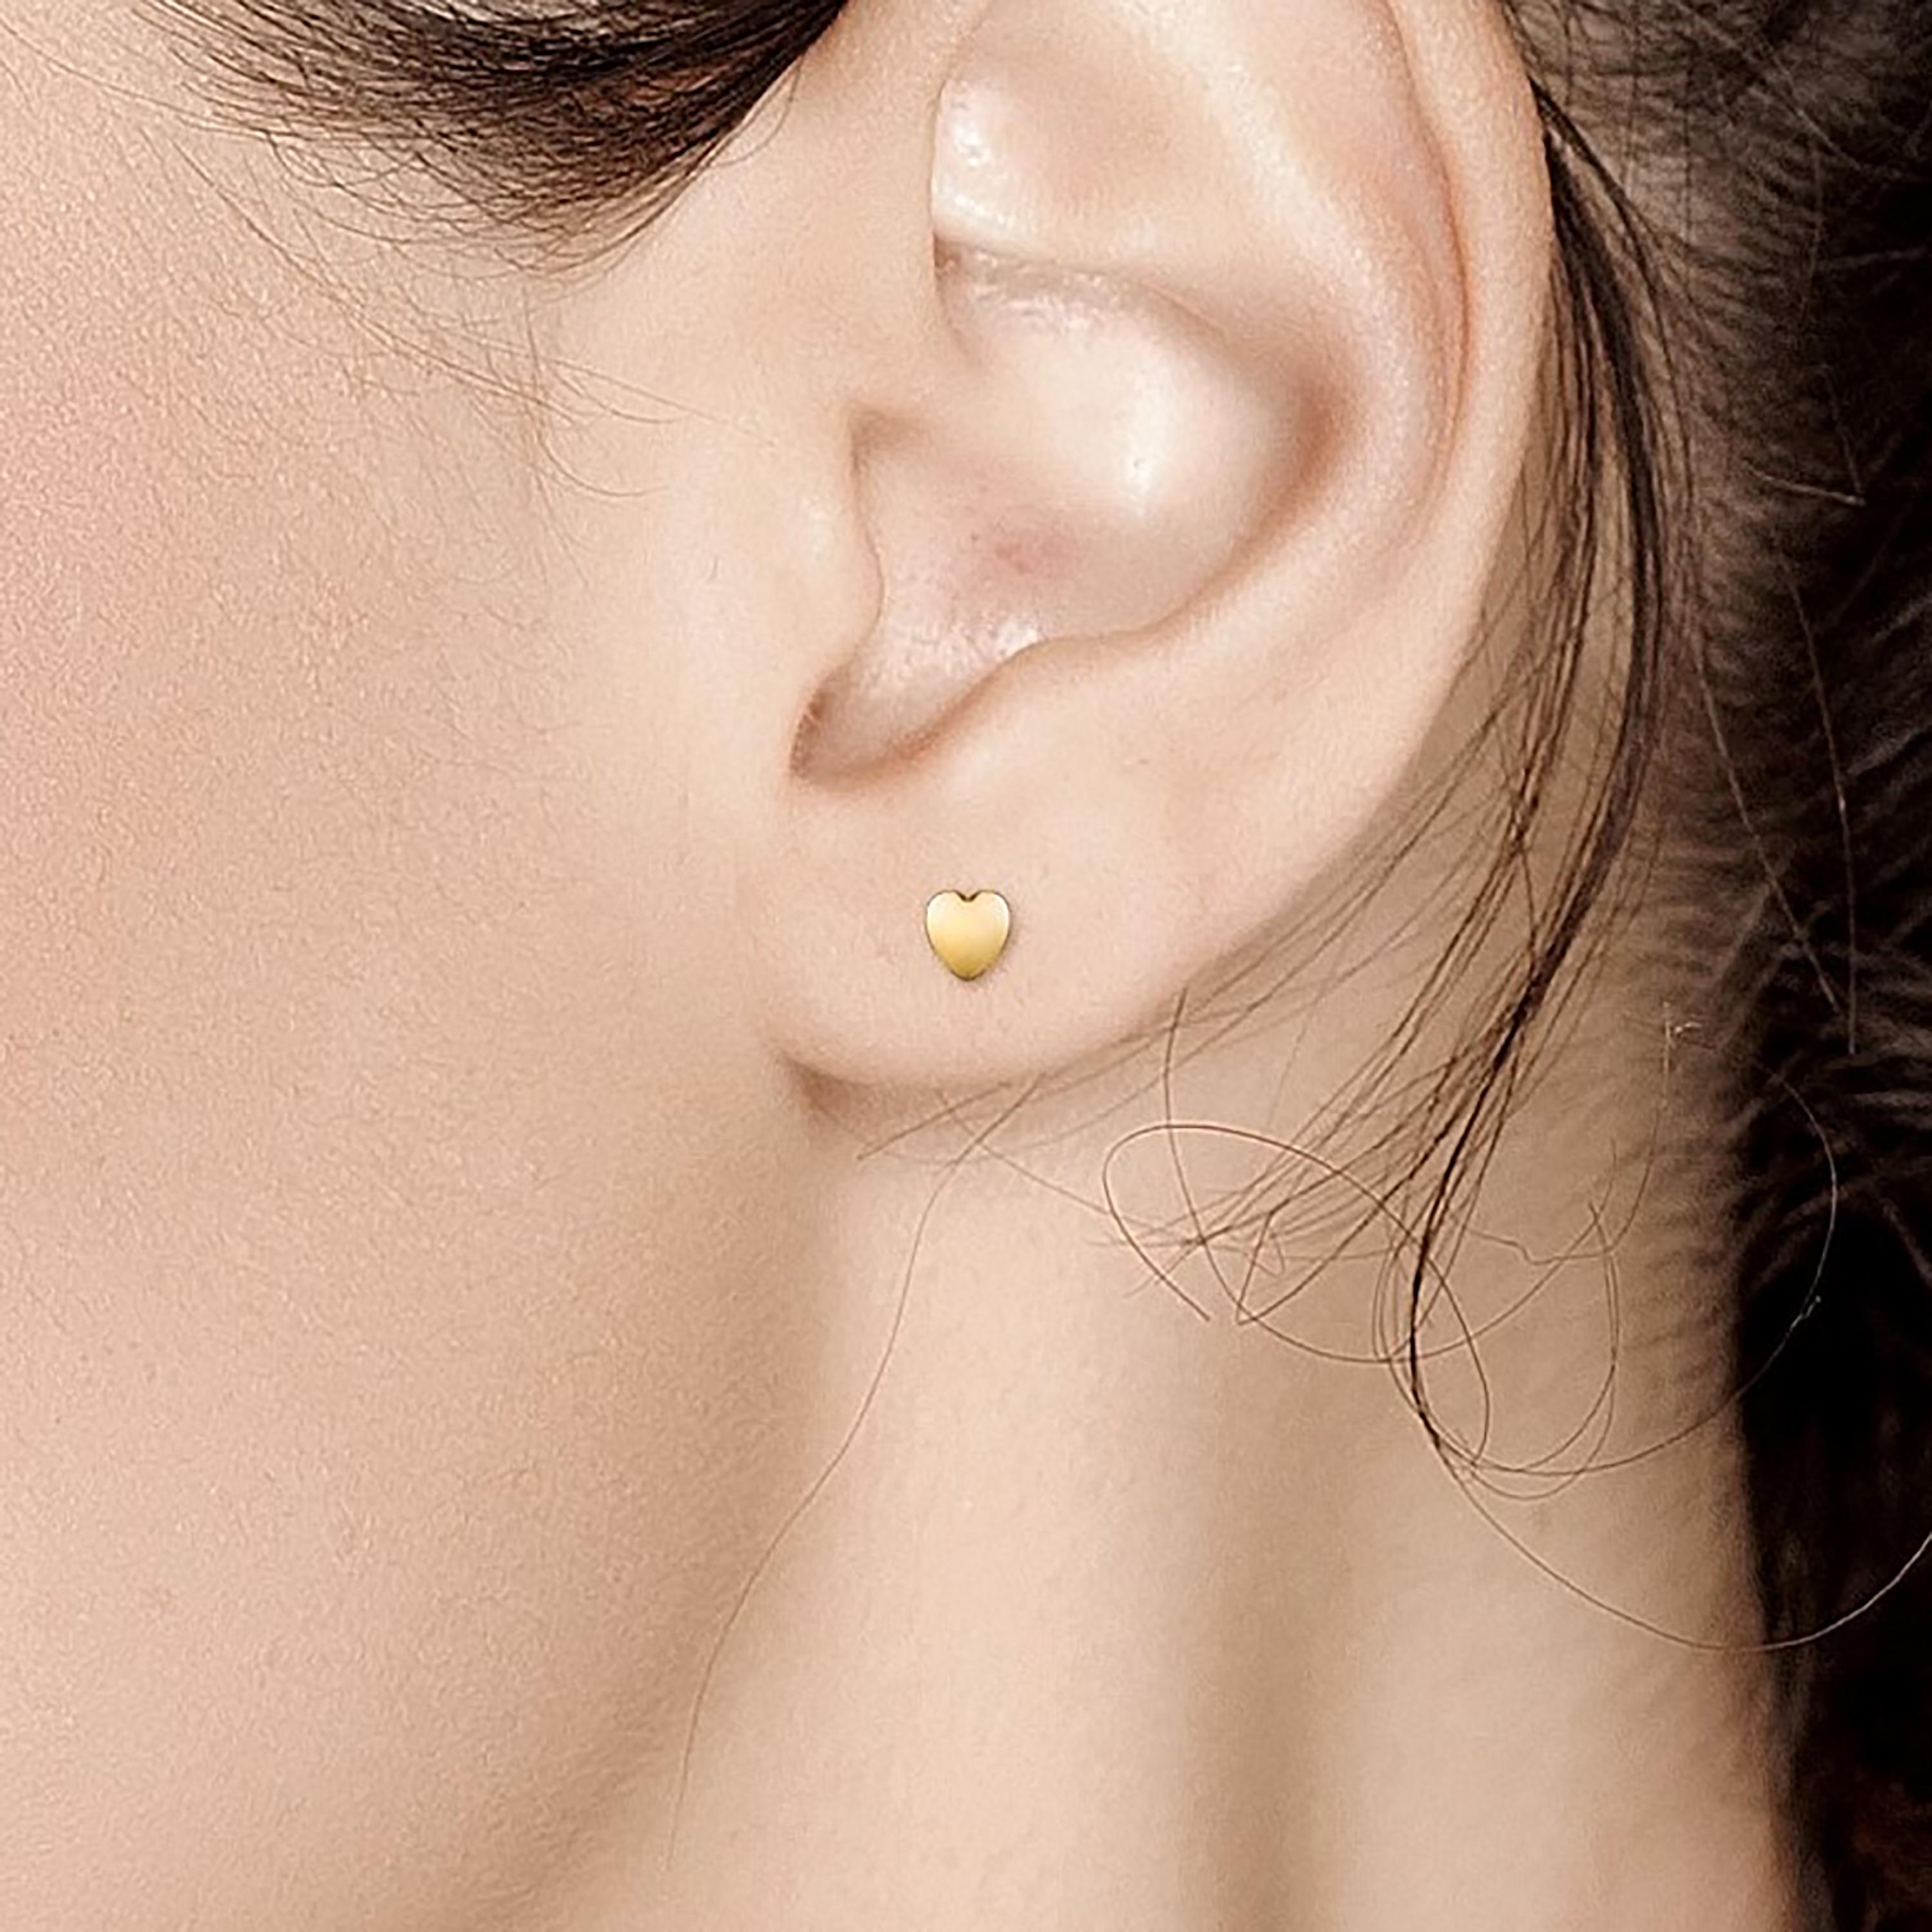 Fourteen karats yellow gold 4-millimeter heart shape stud earrings
Heart shape studs measuring 0.16 inch
New Earrings
Handmade in USA
